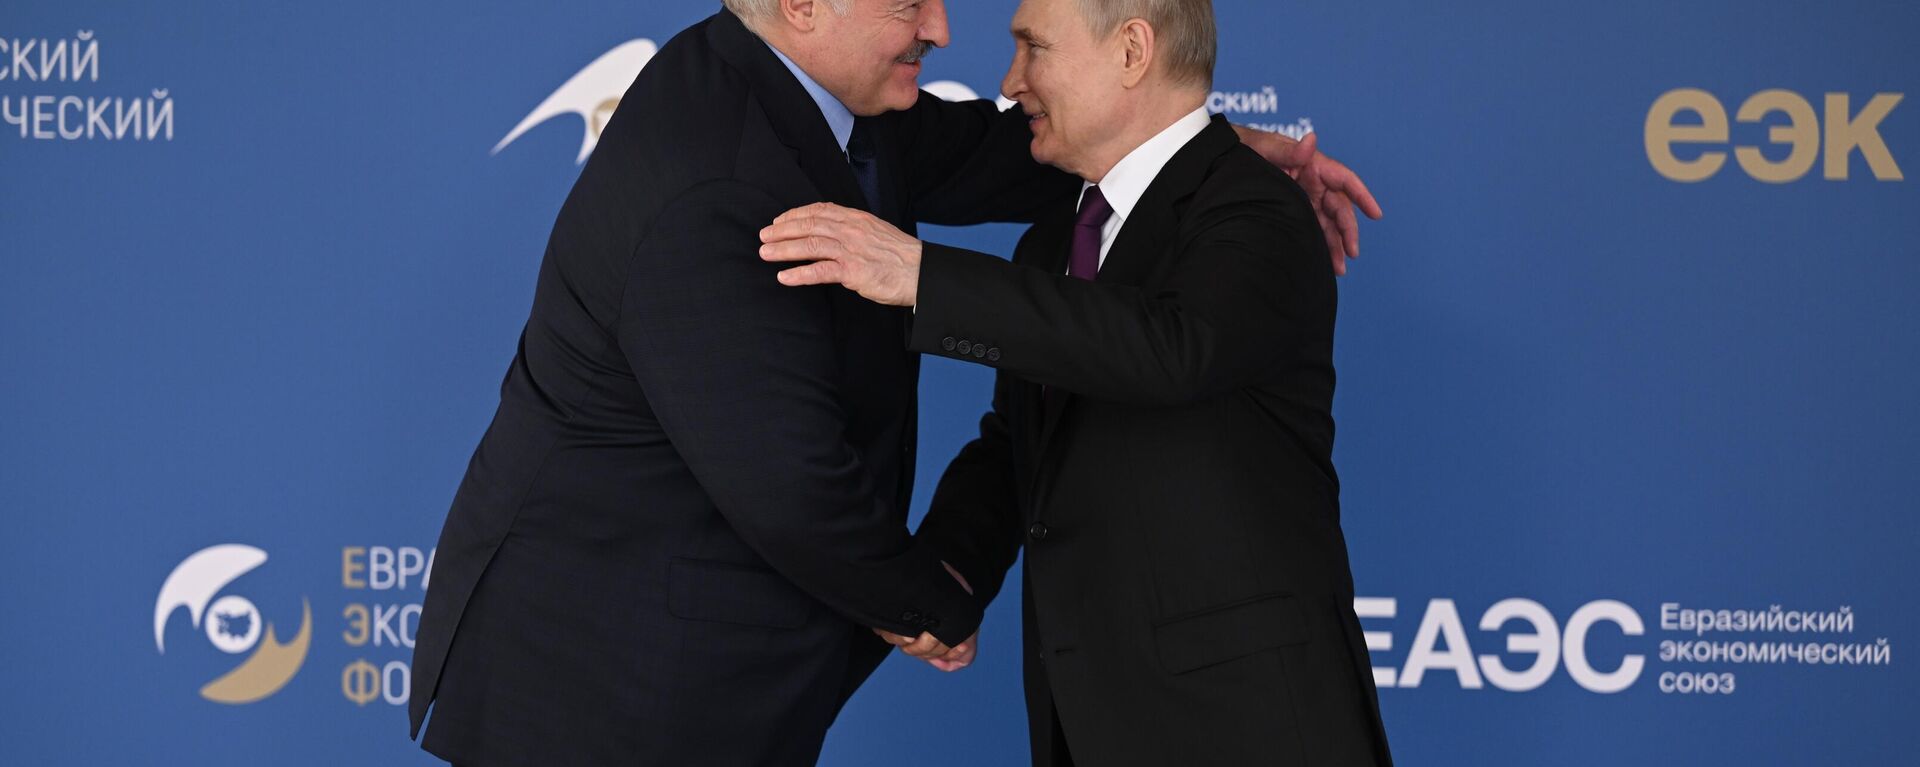 Ruski predsednik Vladimir Putin i beloruski lider Aleksandar Lukašenko na Evroazijskom ekonomskom forumu u Moskvi - Sputnik Srbija, 1920, 25.05.2023